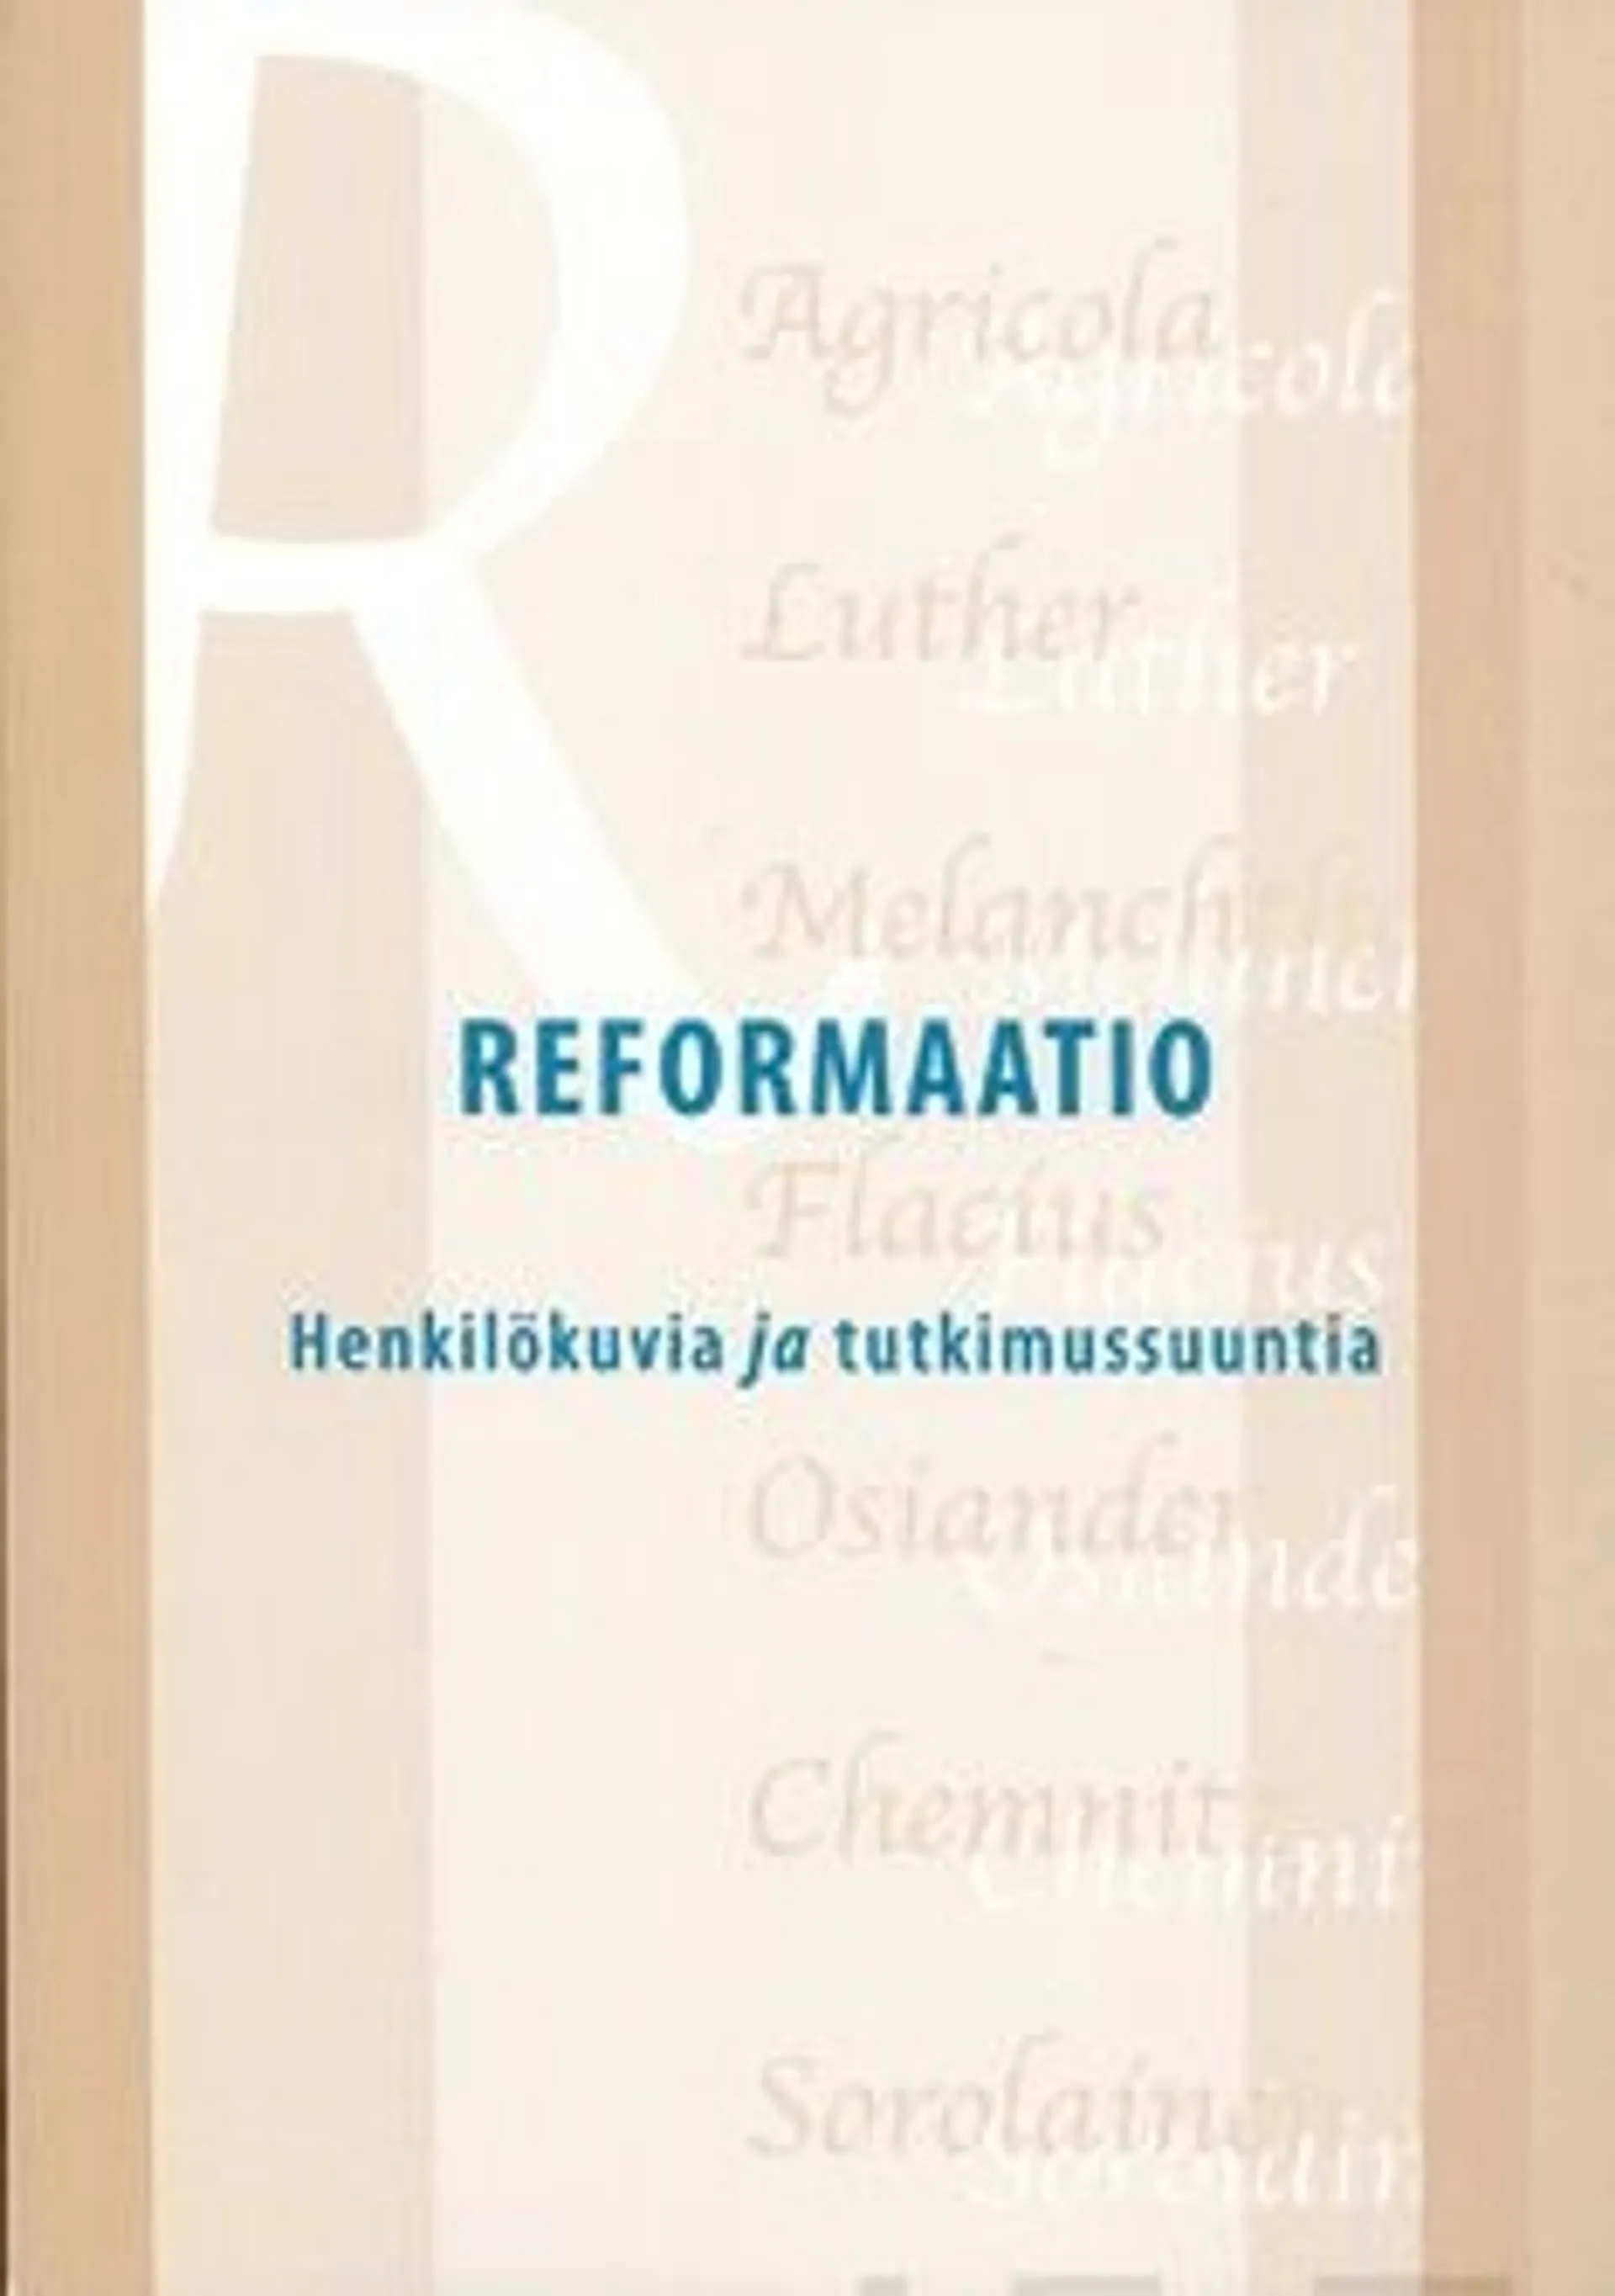 Reformaatio